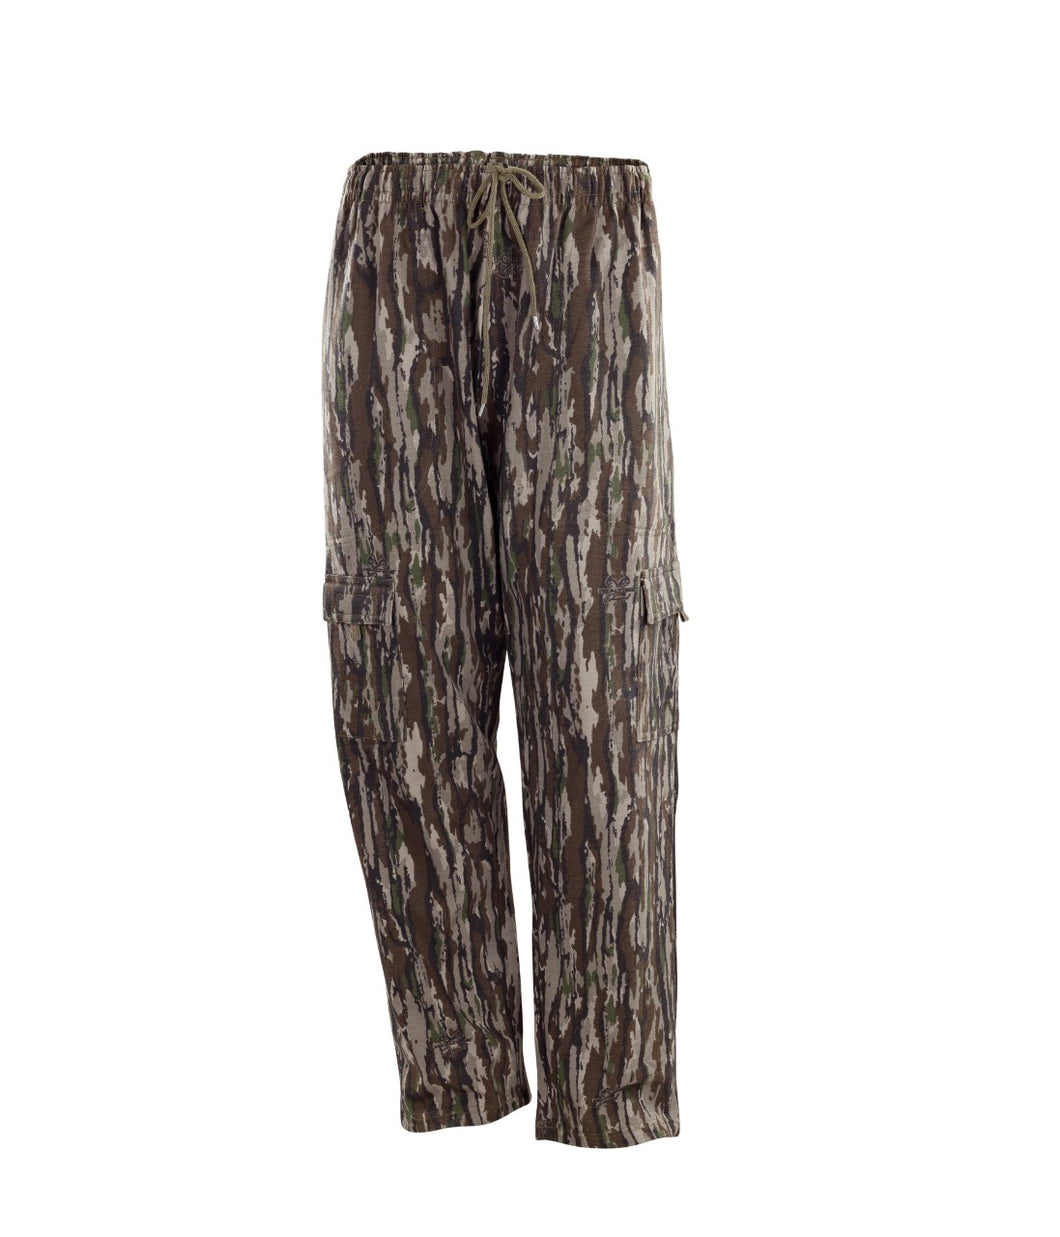 Men's Fleece Cargo Pants in Realtree Original Camo Print